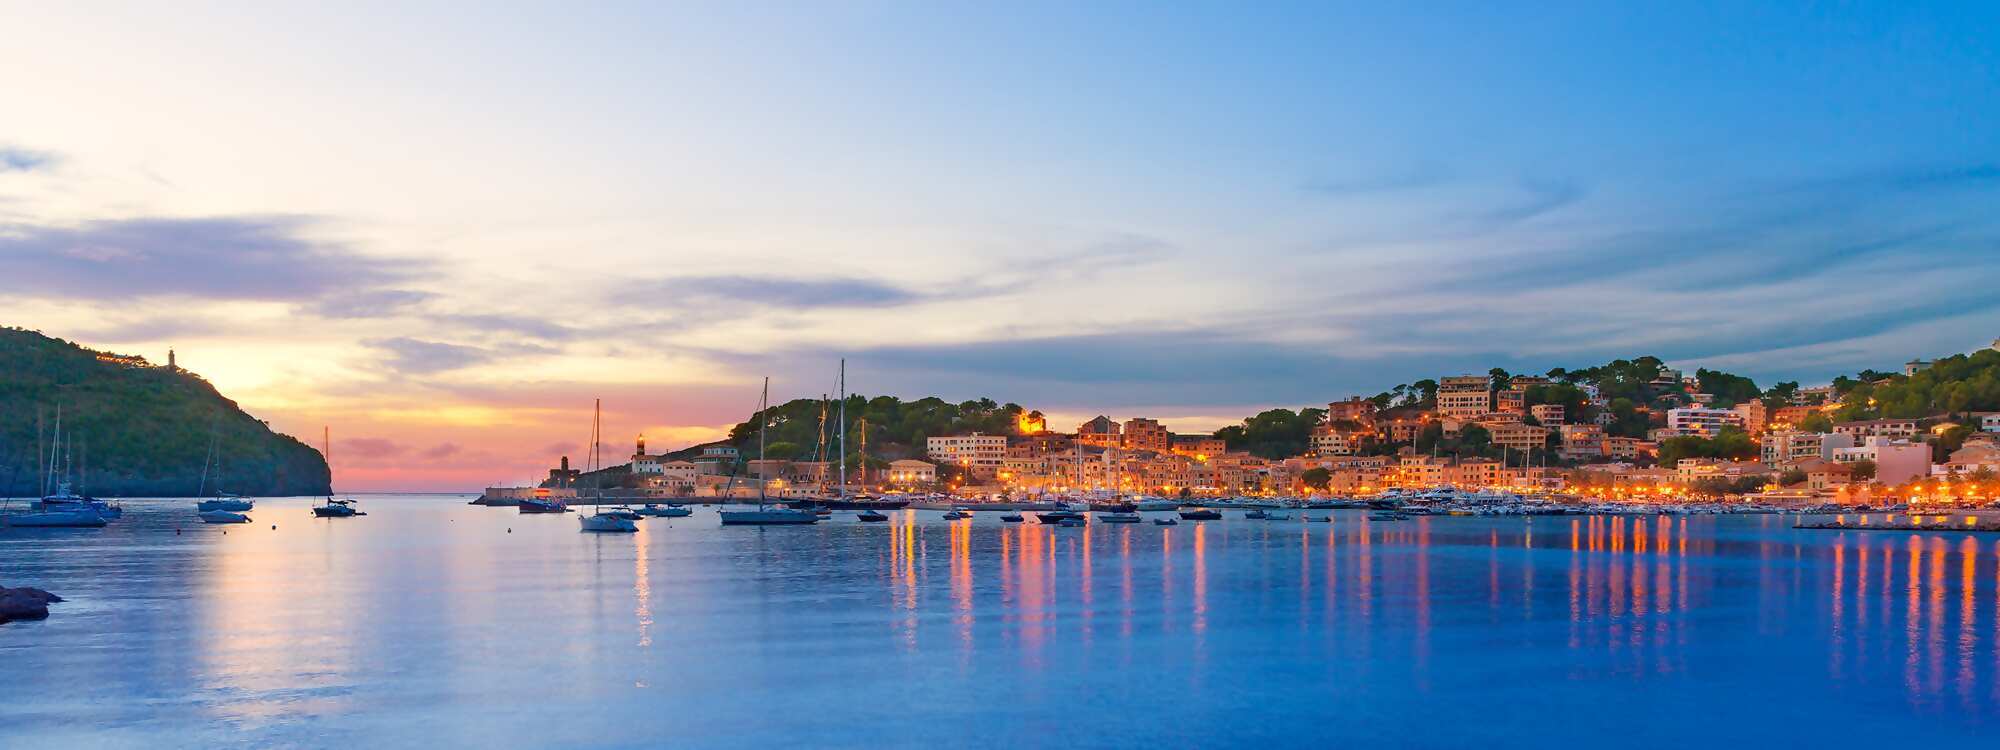 Sonnenuntergang Port de Soller auf der Baleareninsel Mallorca